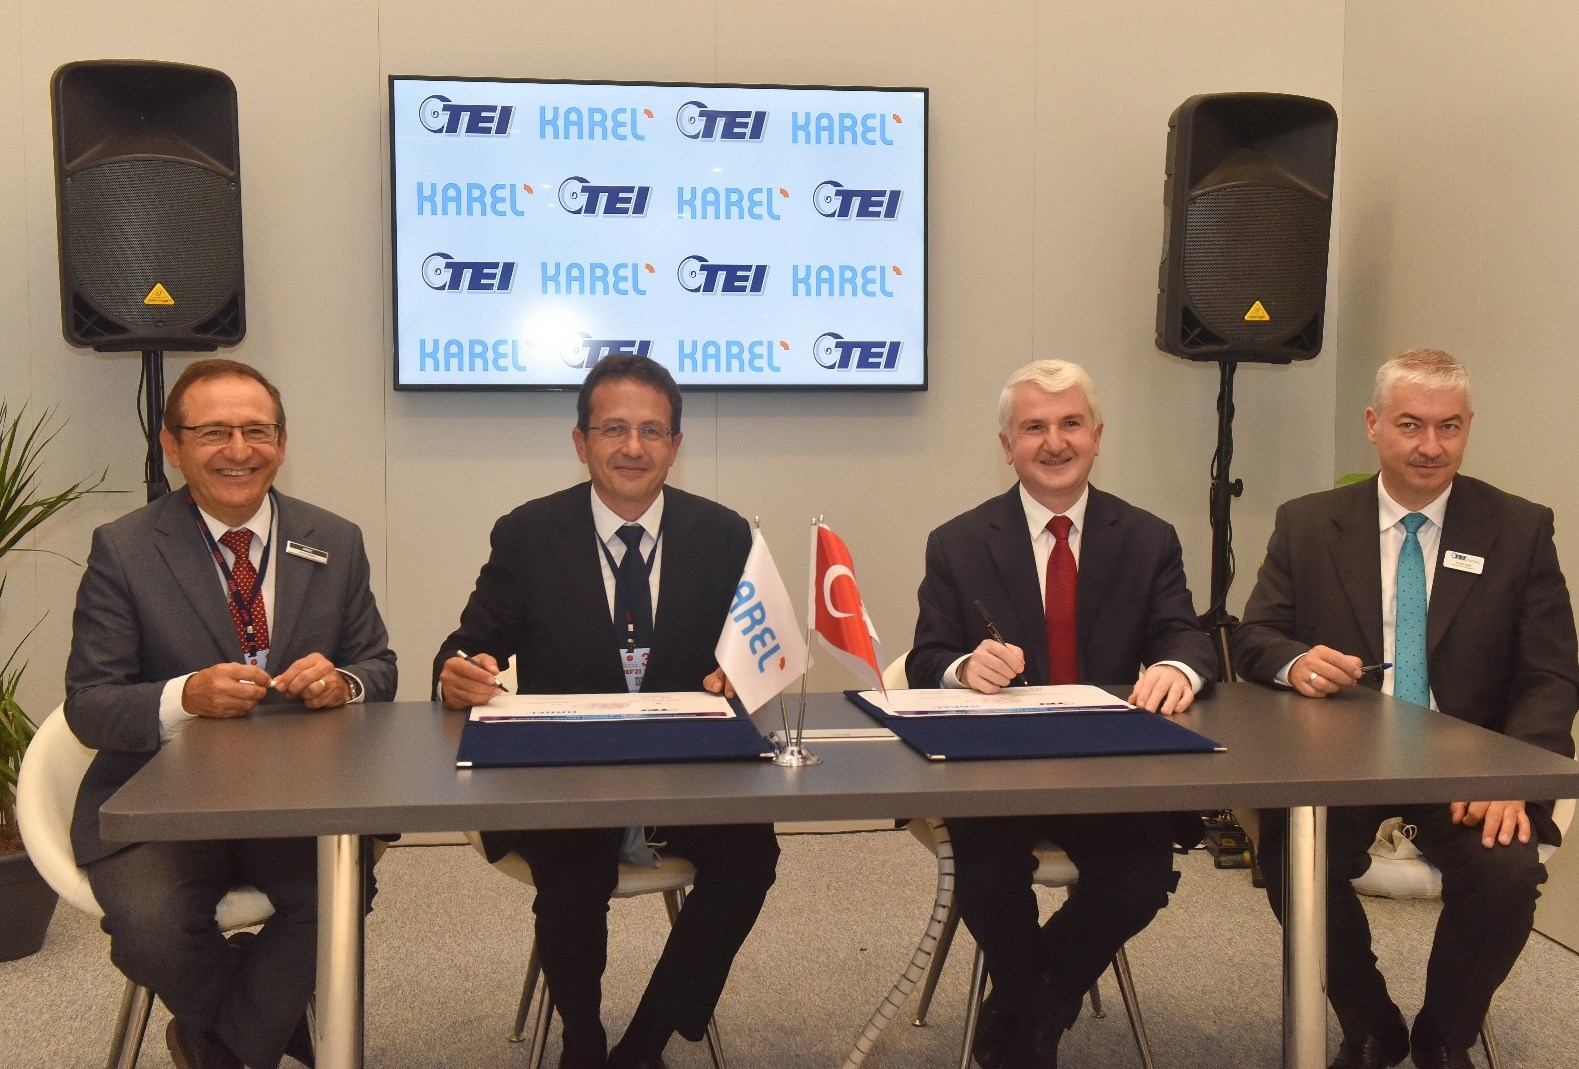 Karel, IDEF 2021’de Aselsan ve TEI ile sözleşme imzaladı